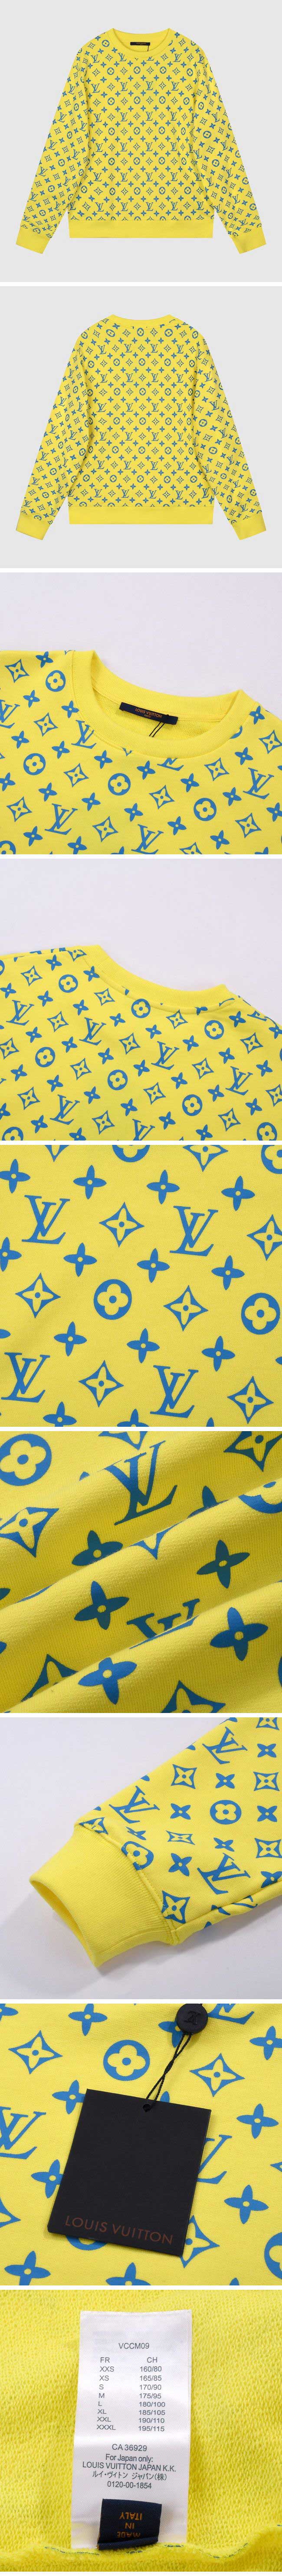 Louis Vuitton Monogram Sweat ルイスヴィトン モノグラム スウェット イエロー